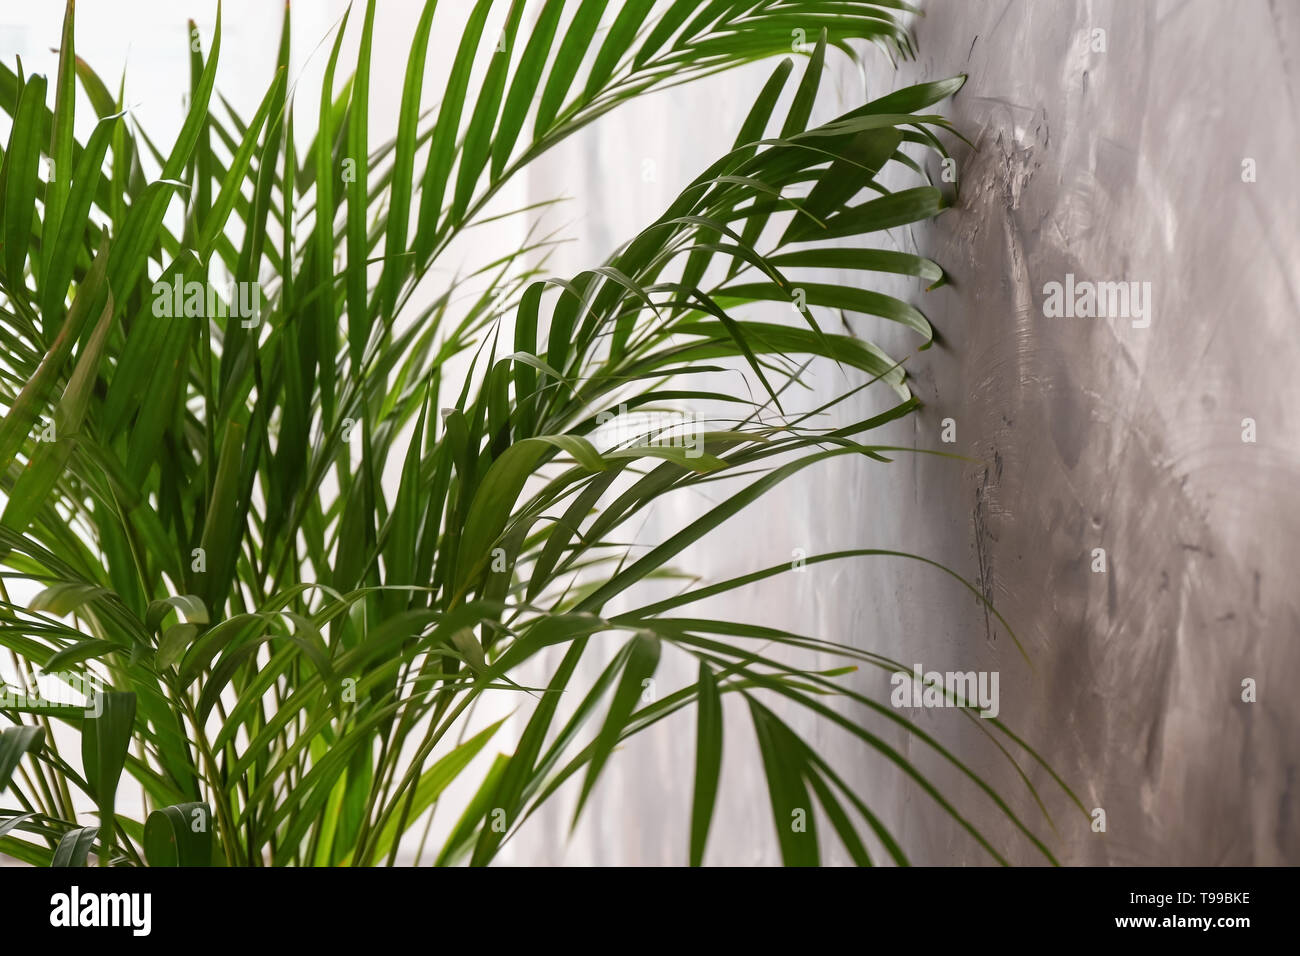 Decorative Areca palm near grey wall Stock Photo